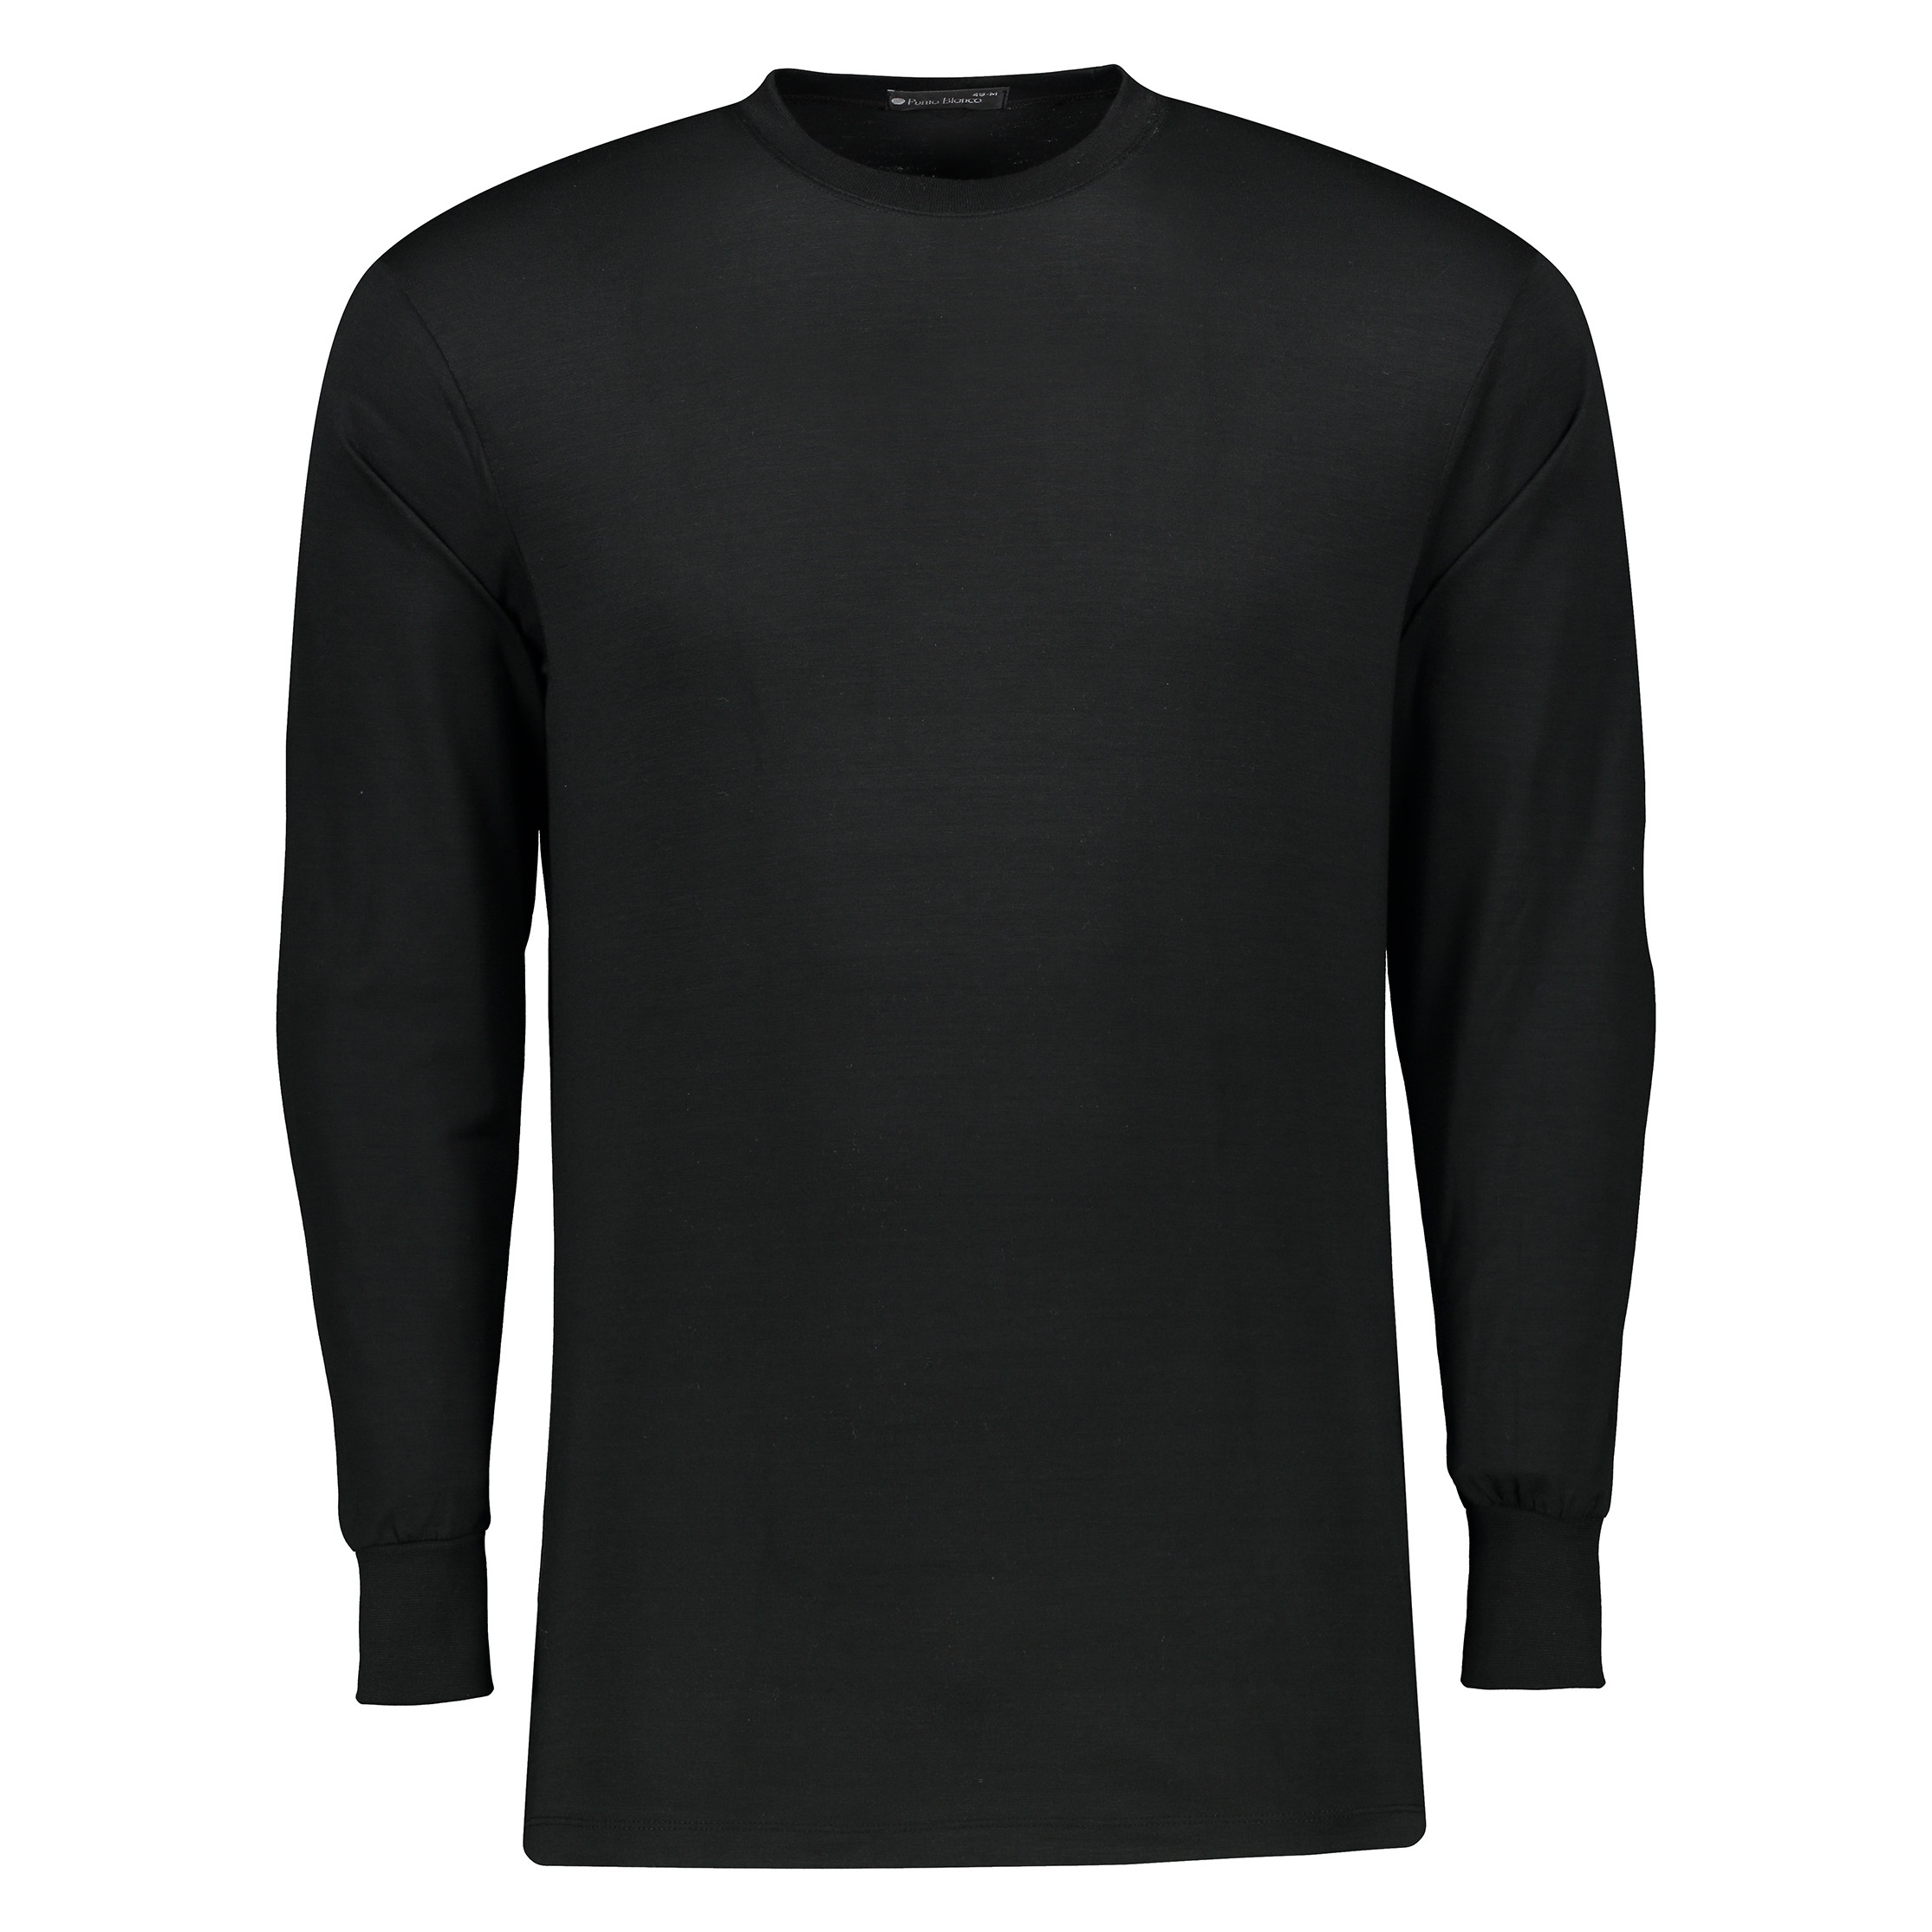 نکته خرید - قیمت روز تی شرت راحتی مردانه پونتو بلانکو کد 33179-20-090 خرید